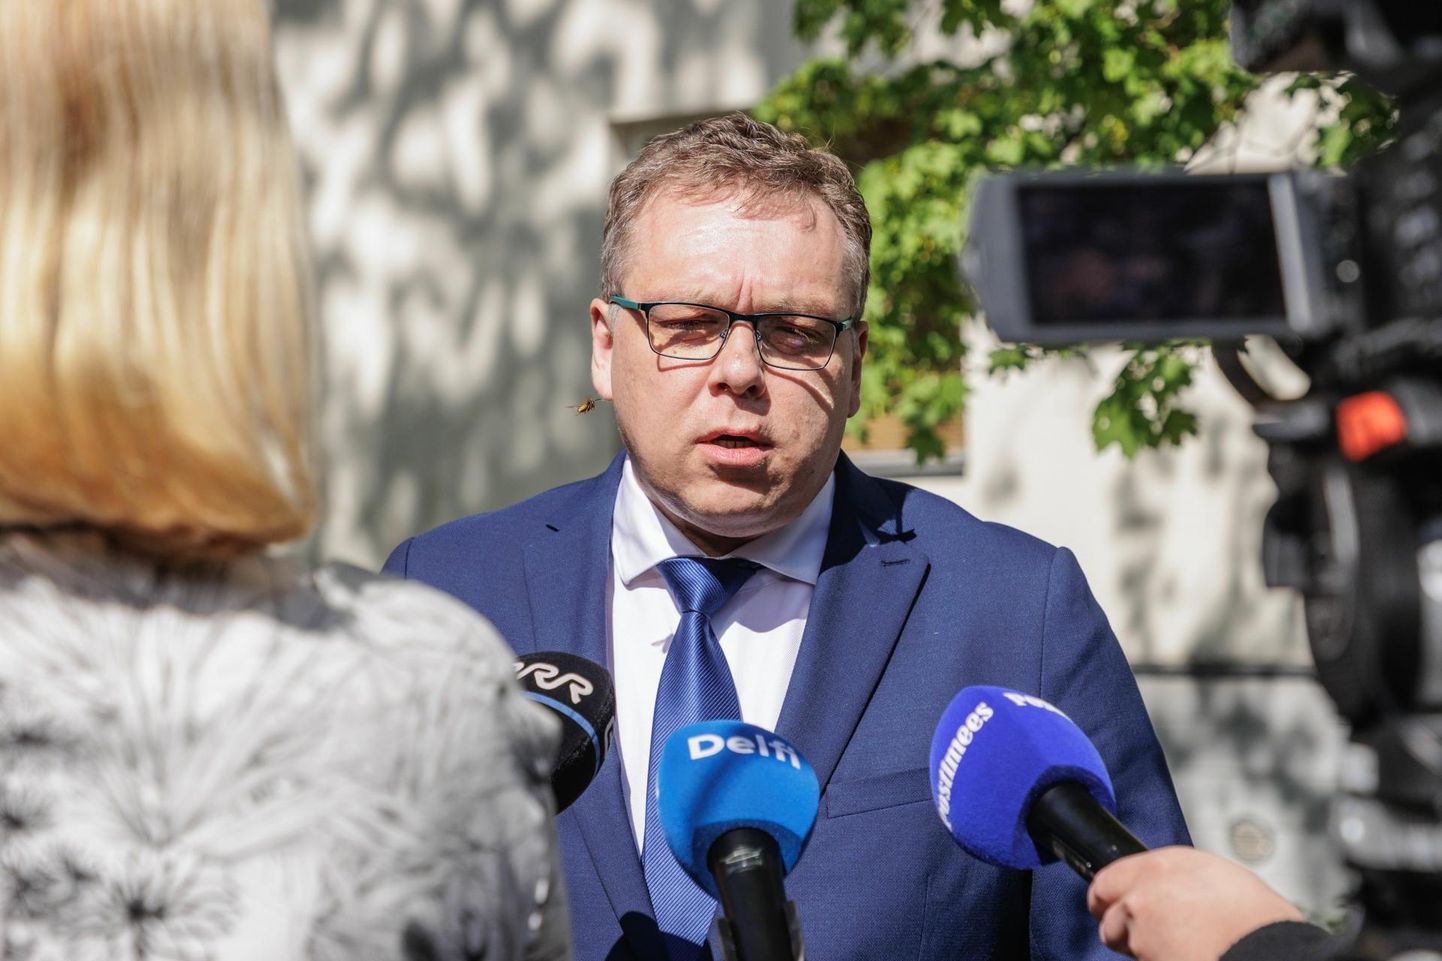 Eesti 200 esimees ja riigikogu esimees Lauri Hussar saatis riigikogu opositsioonile korduskirja.